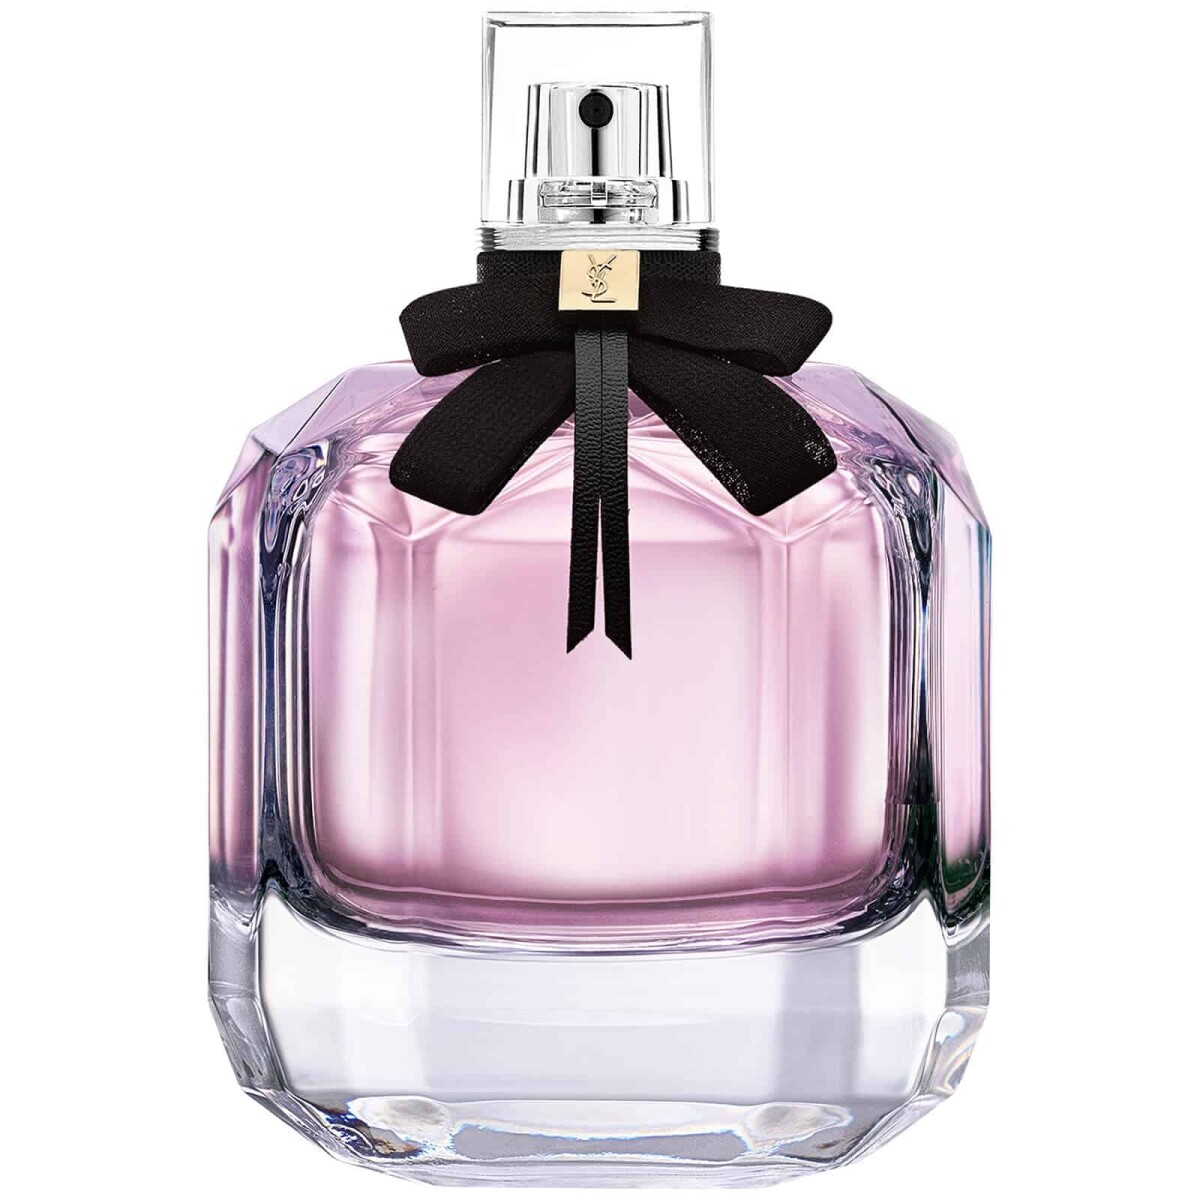 Perfume Ysl Mon Paris Edp 30 ml 